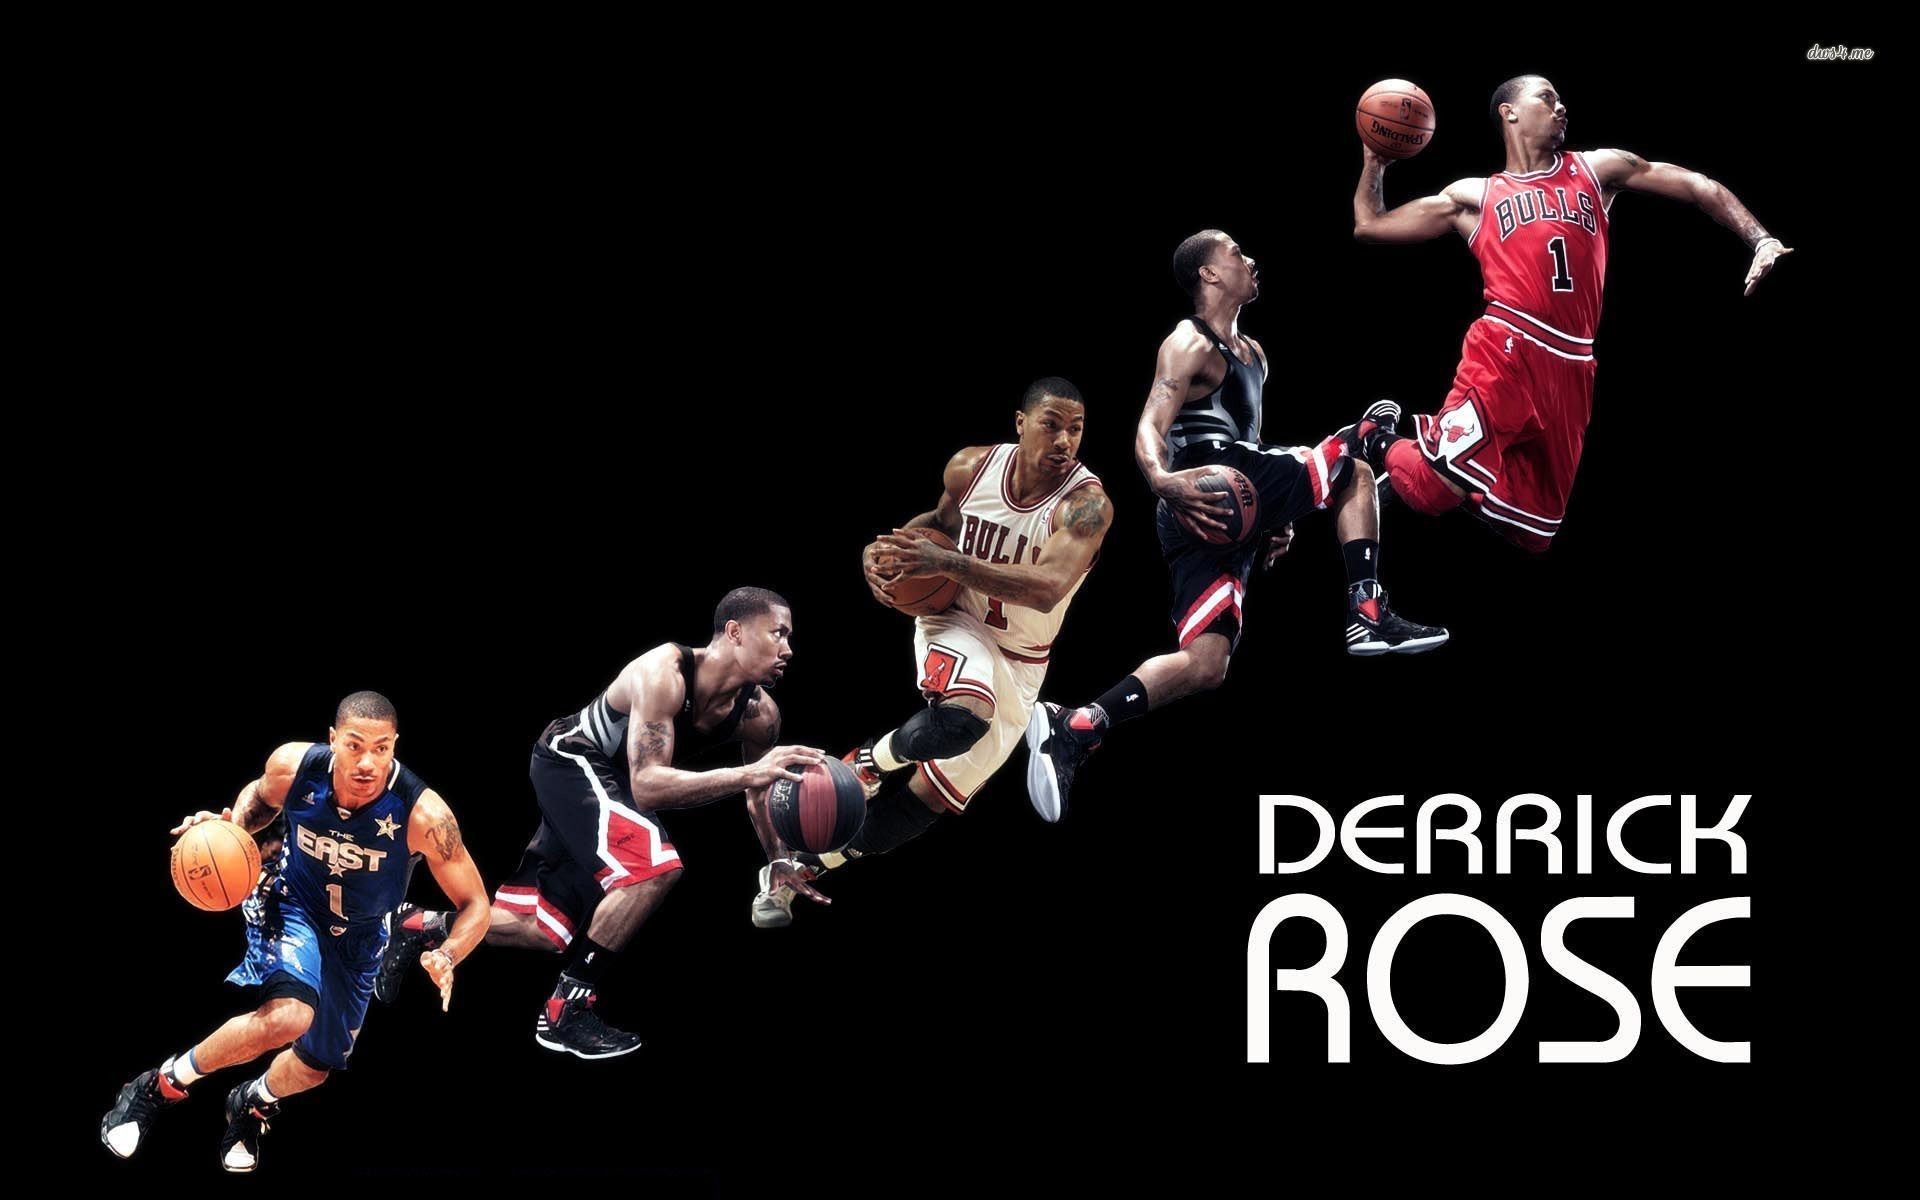 Derrick Rose, chicago bulls, basketball, nba, sport, sports